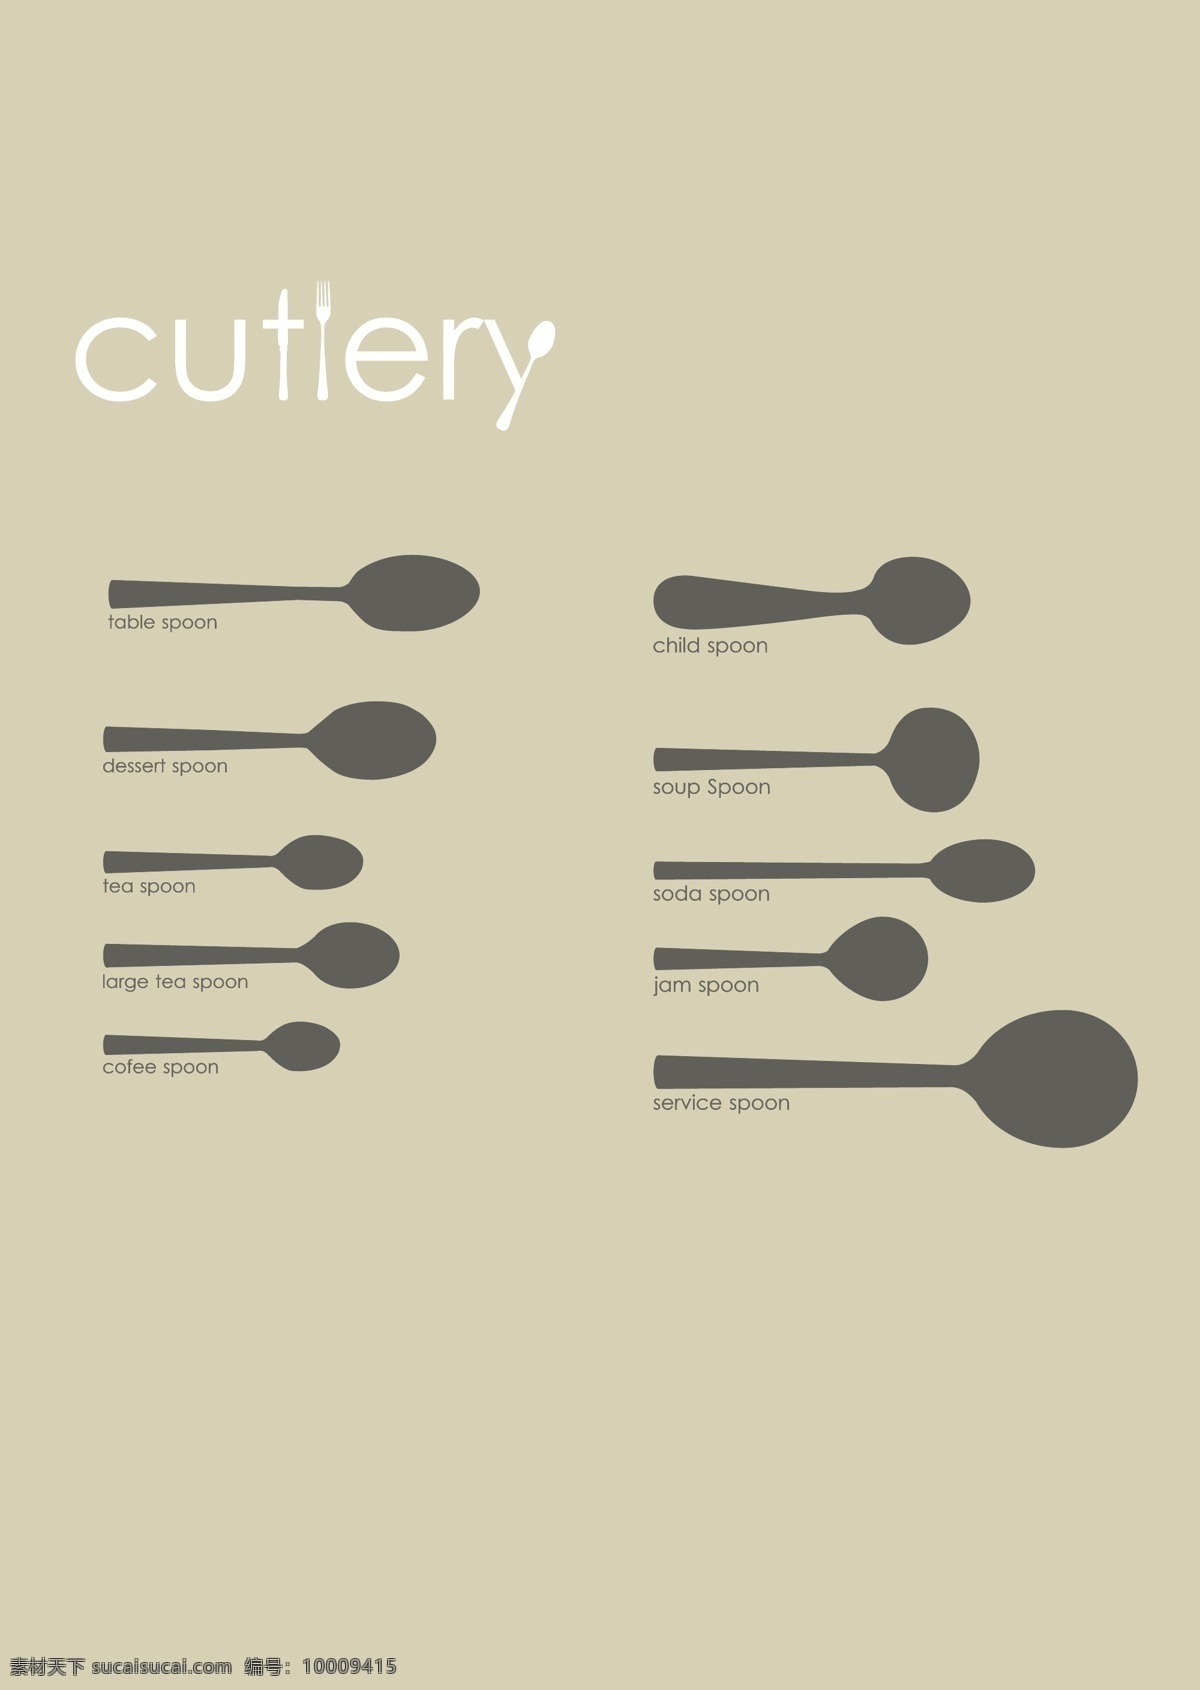 西餐 勺子 分类 剪影 图标 西式 汤勺 甜品勺 茶勺 咖啡勺 儿童勺 沙拉勺 果酱勺 公勺 服务勺 勺子图标